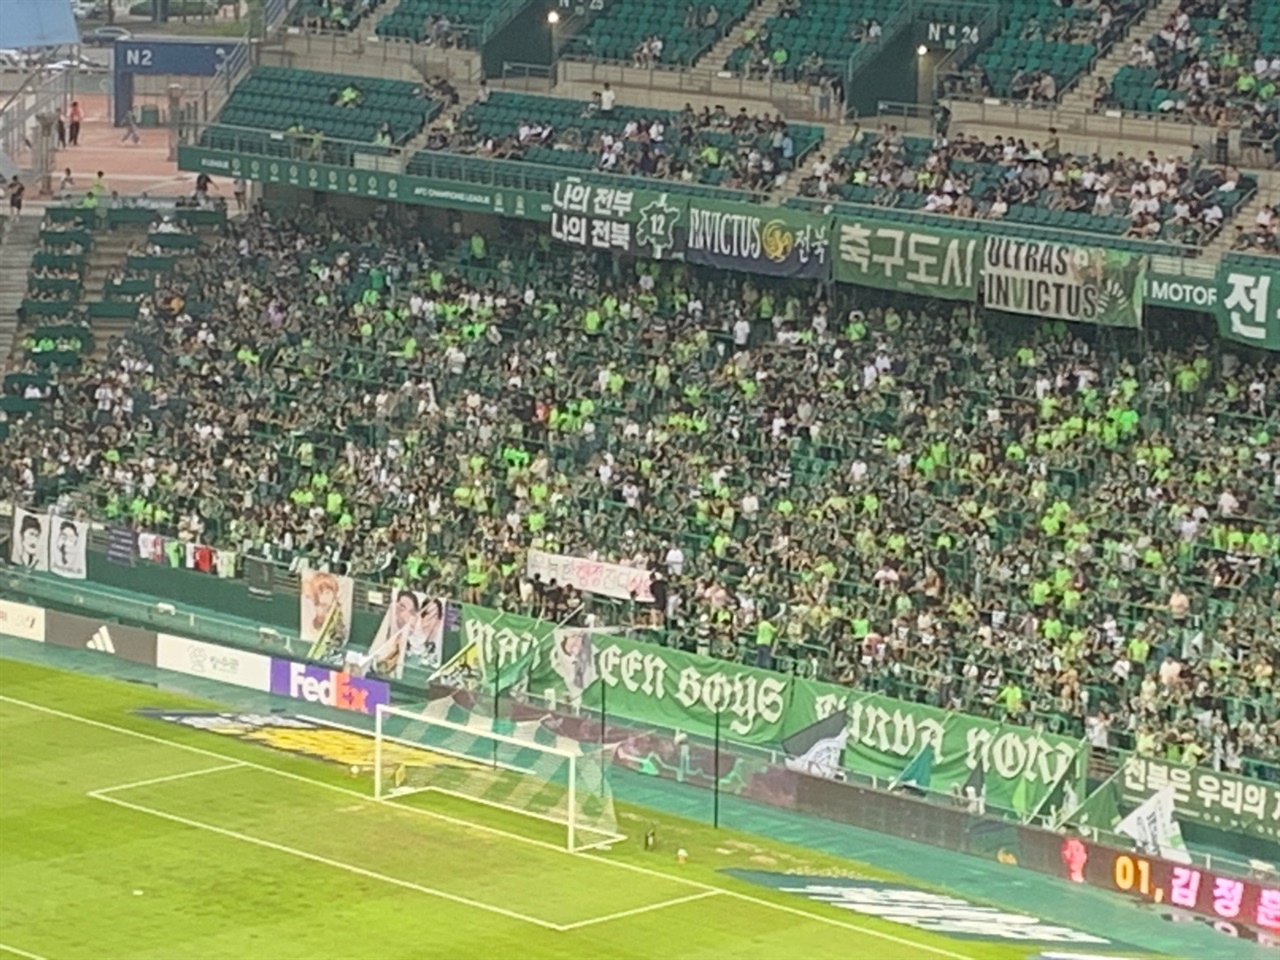  경기 시작 전, 전북 현대 팬들은 잼버리 사태에 관해 '무능한 정부 잔디 상함'이라는 현수막을 내걸며 항의 뜻을 내비쳤다